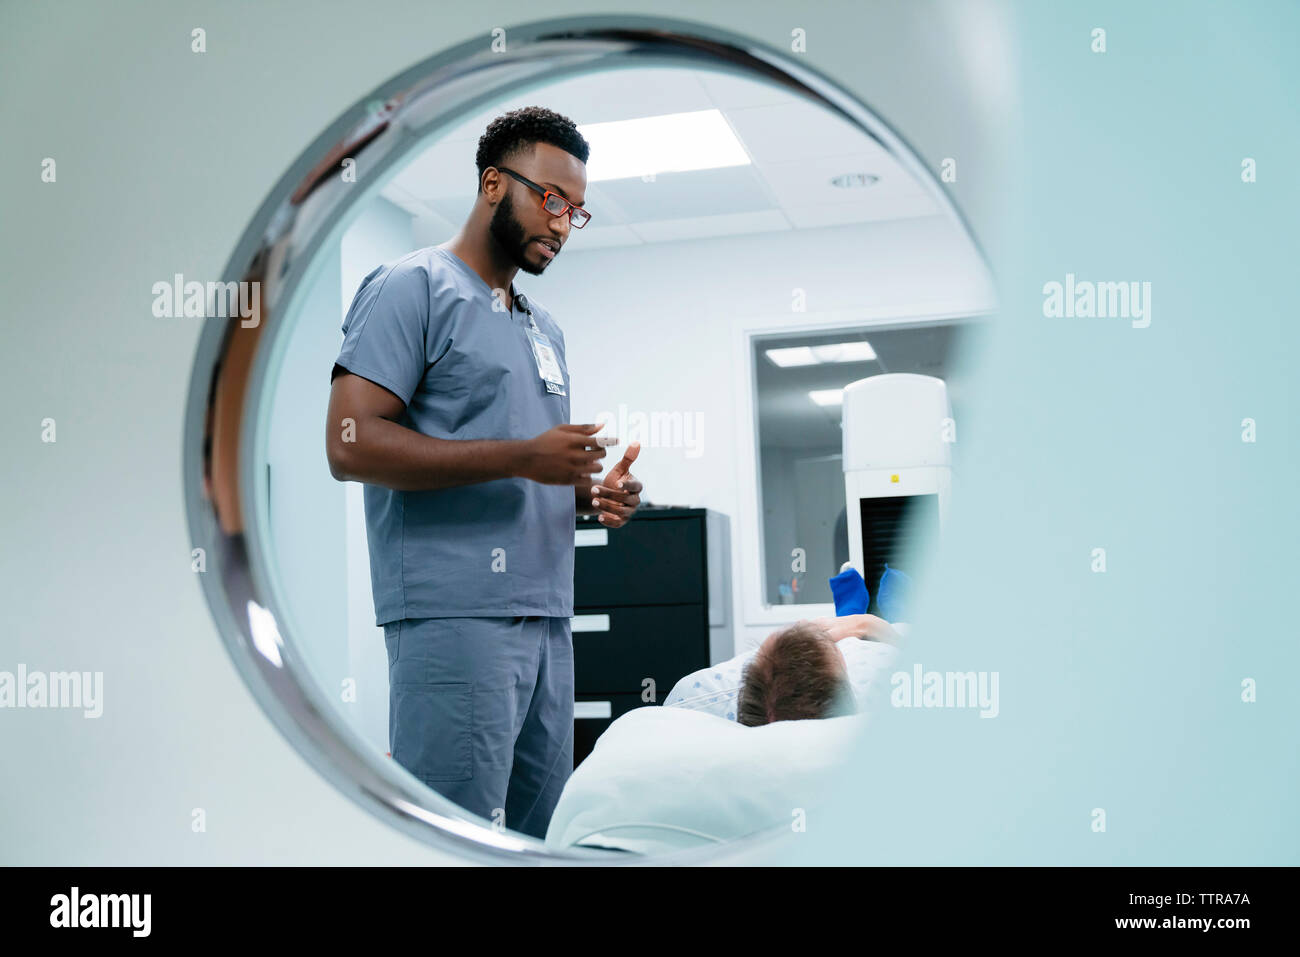 Männliche Krankenschwester im Gespräch mit Patient im Untersuchungsraum durch MRT-Scanner gesehen Stockfoto